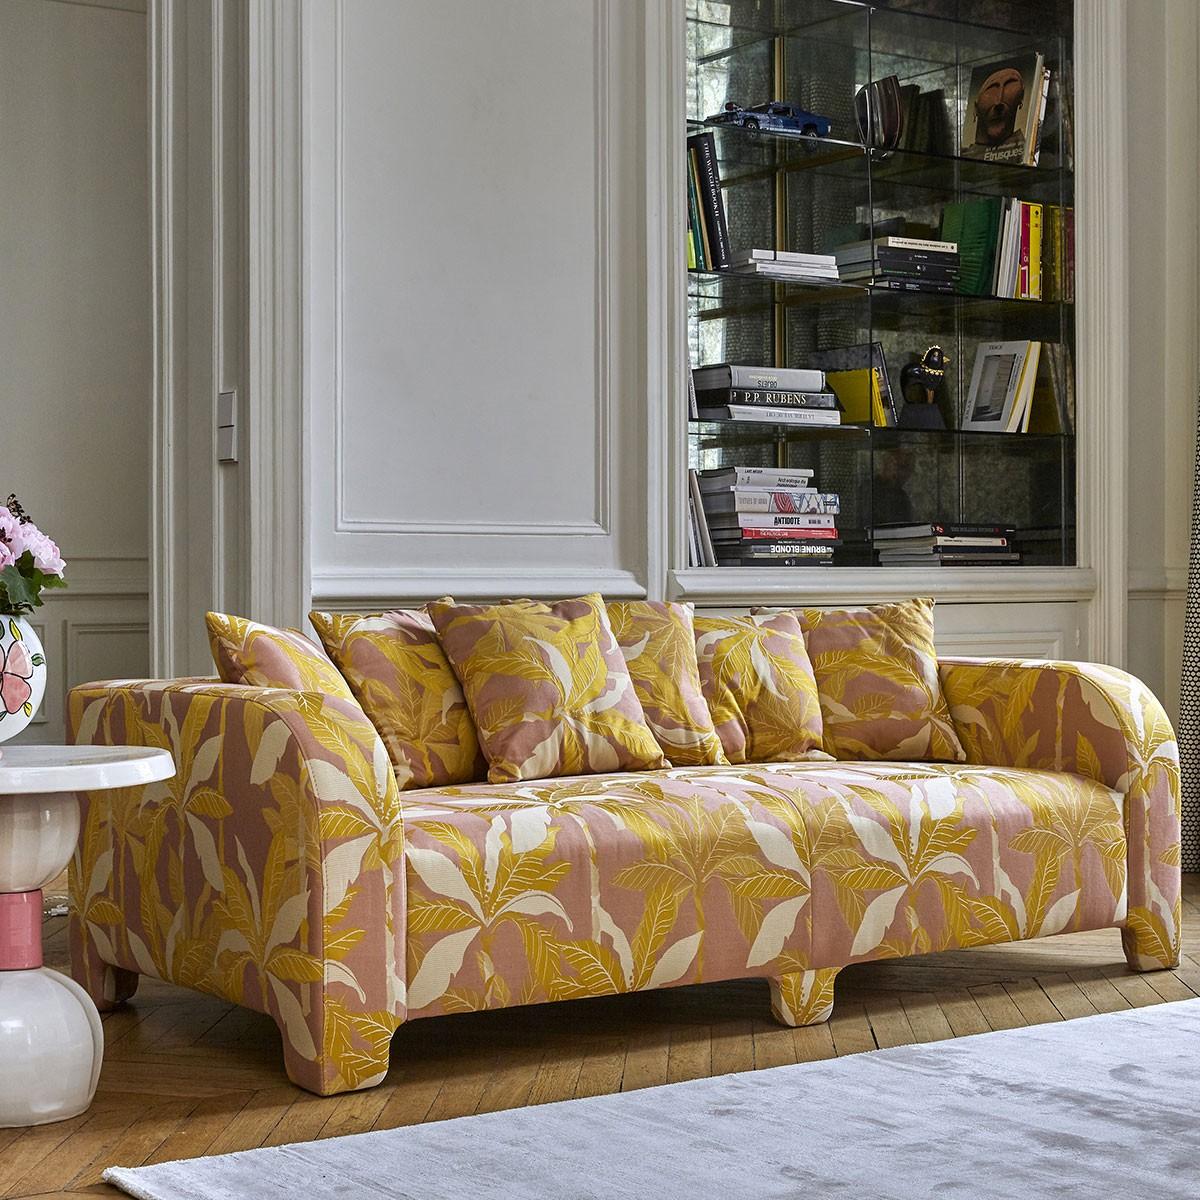 Popus Editions Graziella 4 Seater Sofa in Duna Venice Chenille Velvet Fabric In New Condition For Sale In Paris, FR